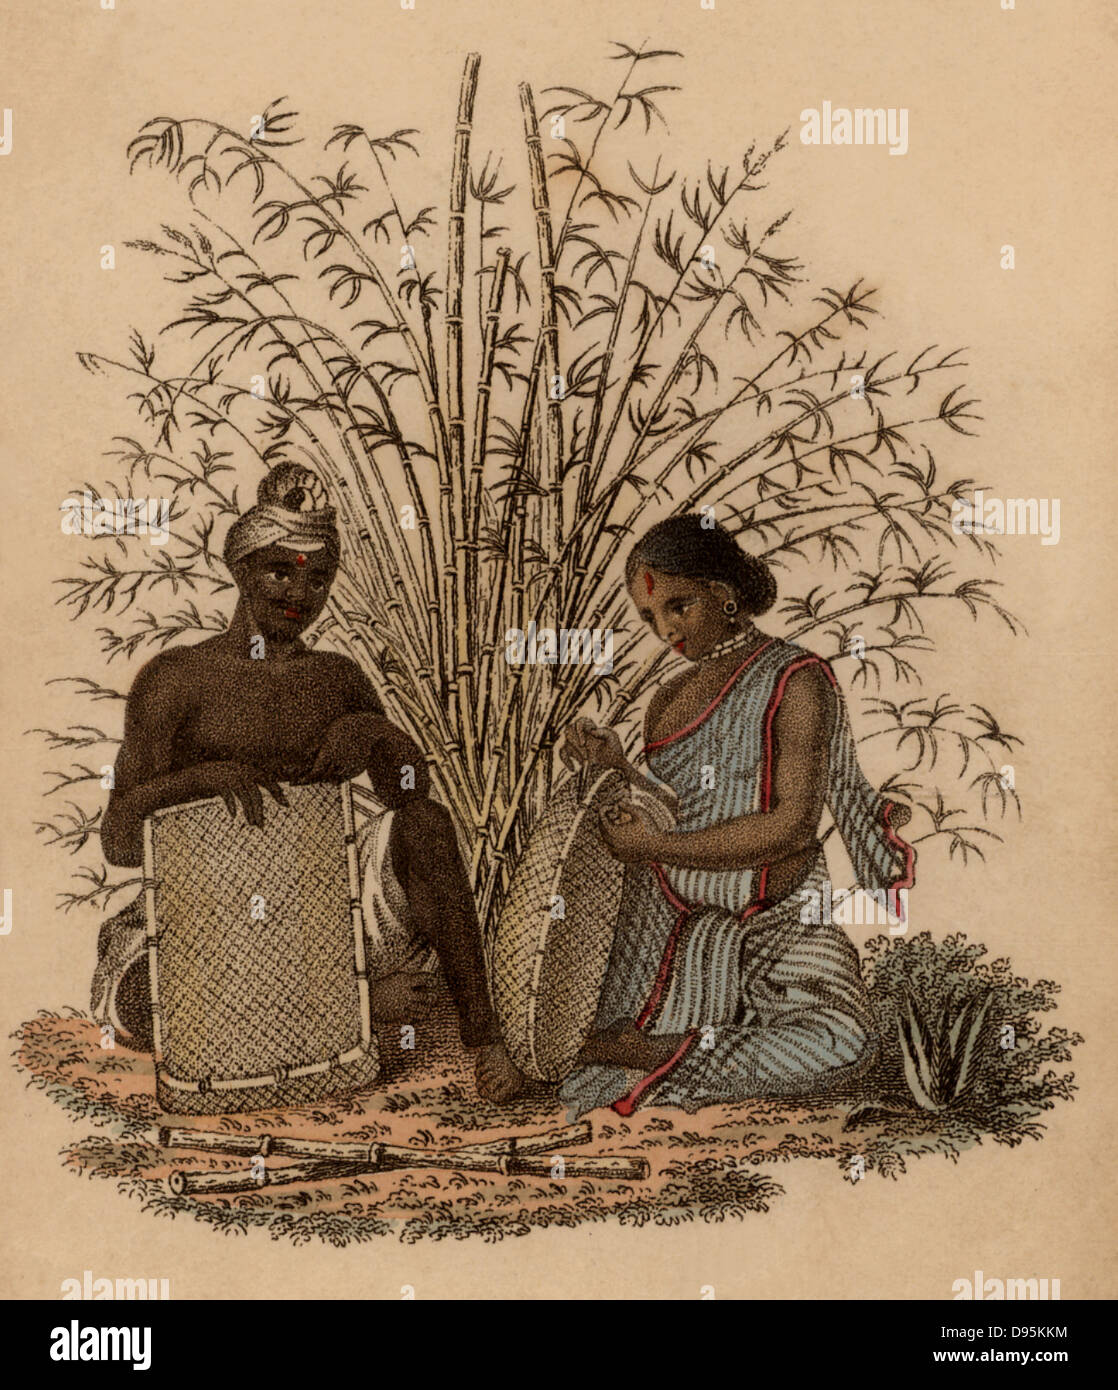 Indische Korbmacher und seiner Frau bei der Arbeit. Handkolorierten Kupferstich veröffentlicht Rudolph Ackermann, London, 1822. Stockfoto